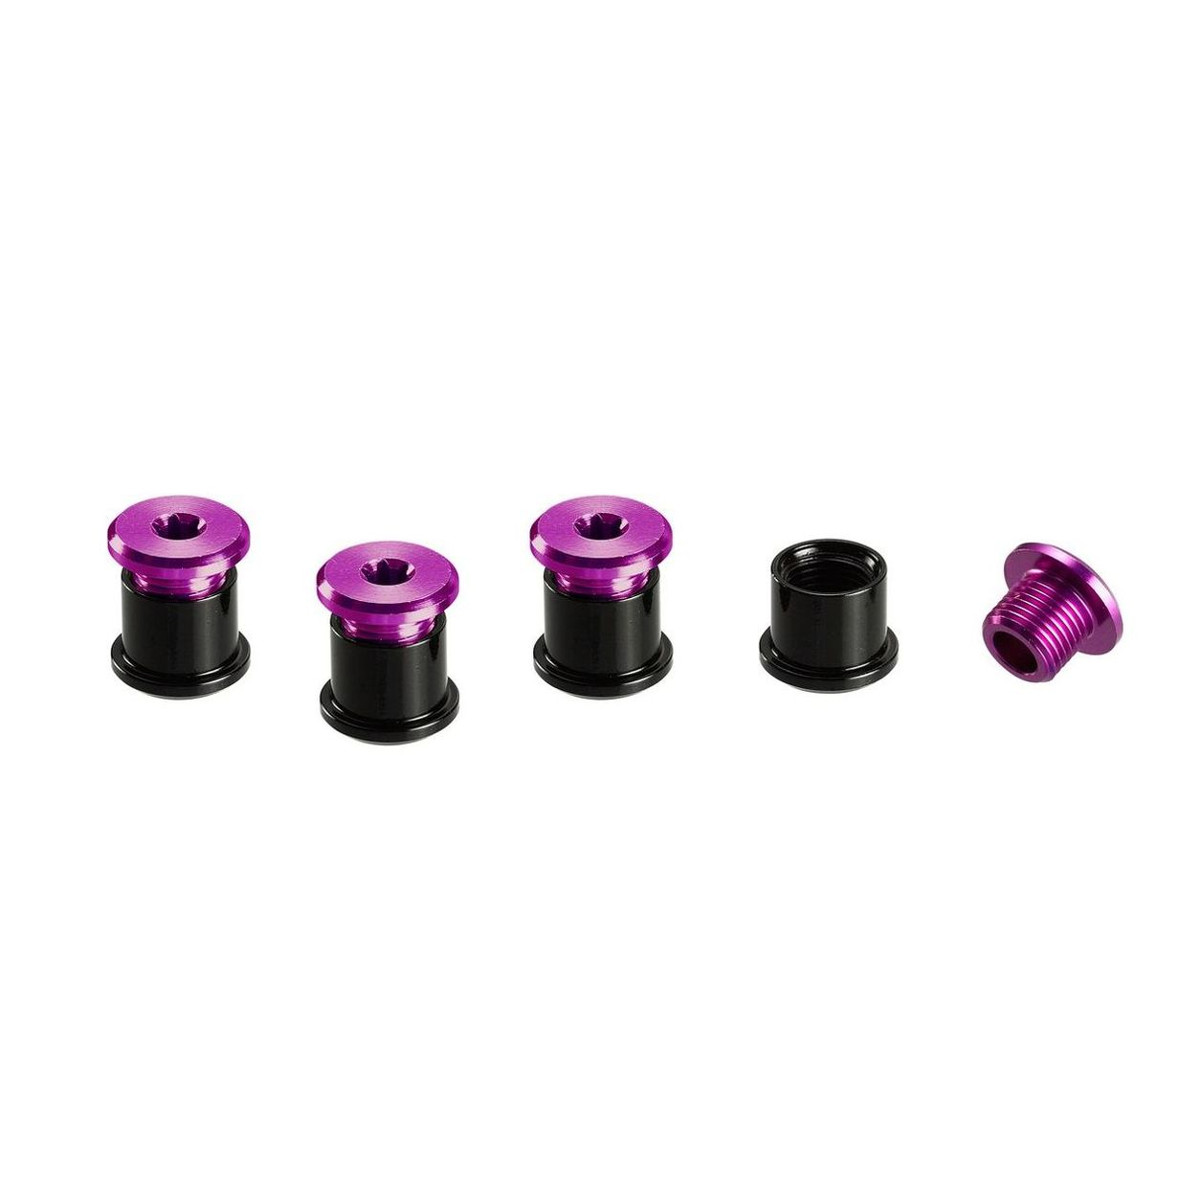 E*thirteen Kit Viti Corona  Purple, Aluminium, T25 6 mm Screws/ T30 7,5 mm Nuts, 4 pcs each